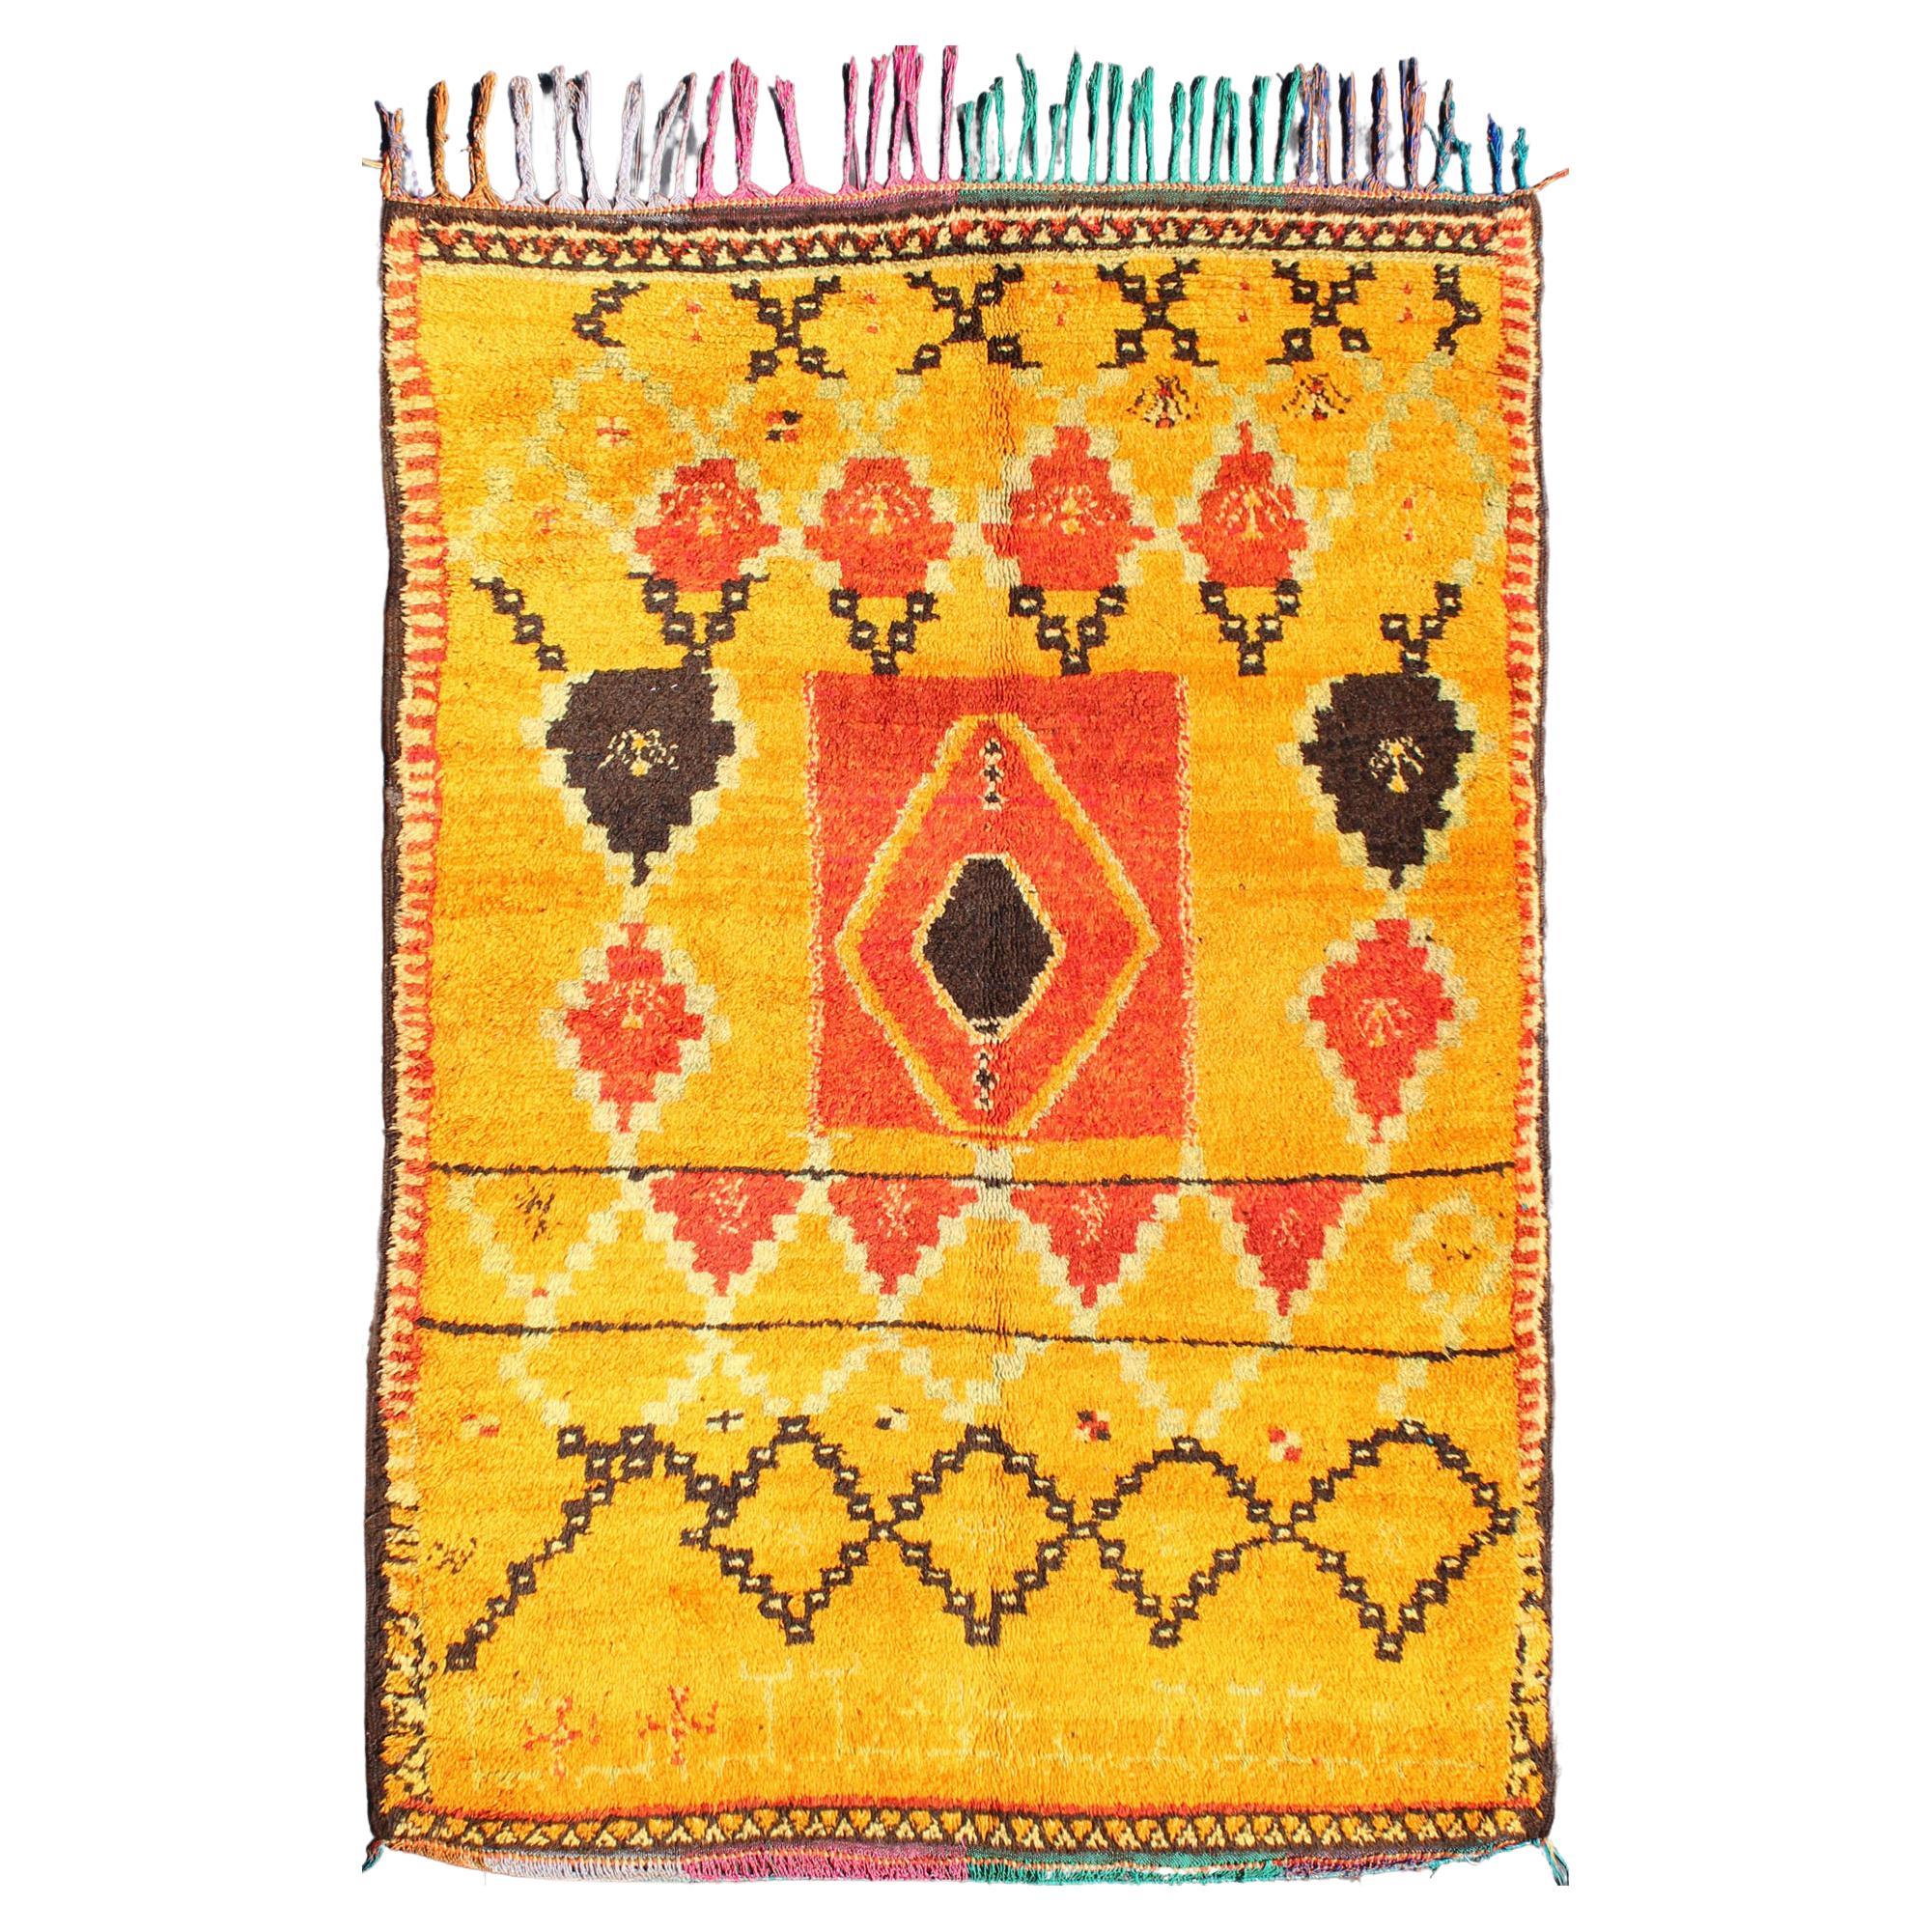 Saffron Colored Moroccan Carpet with Tribal Geometric Design  For Sale